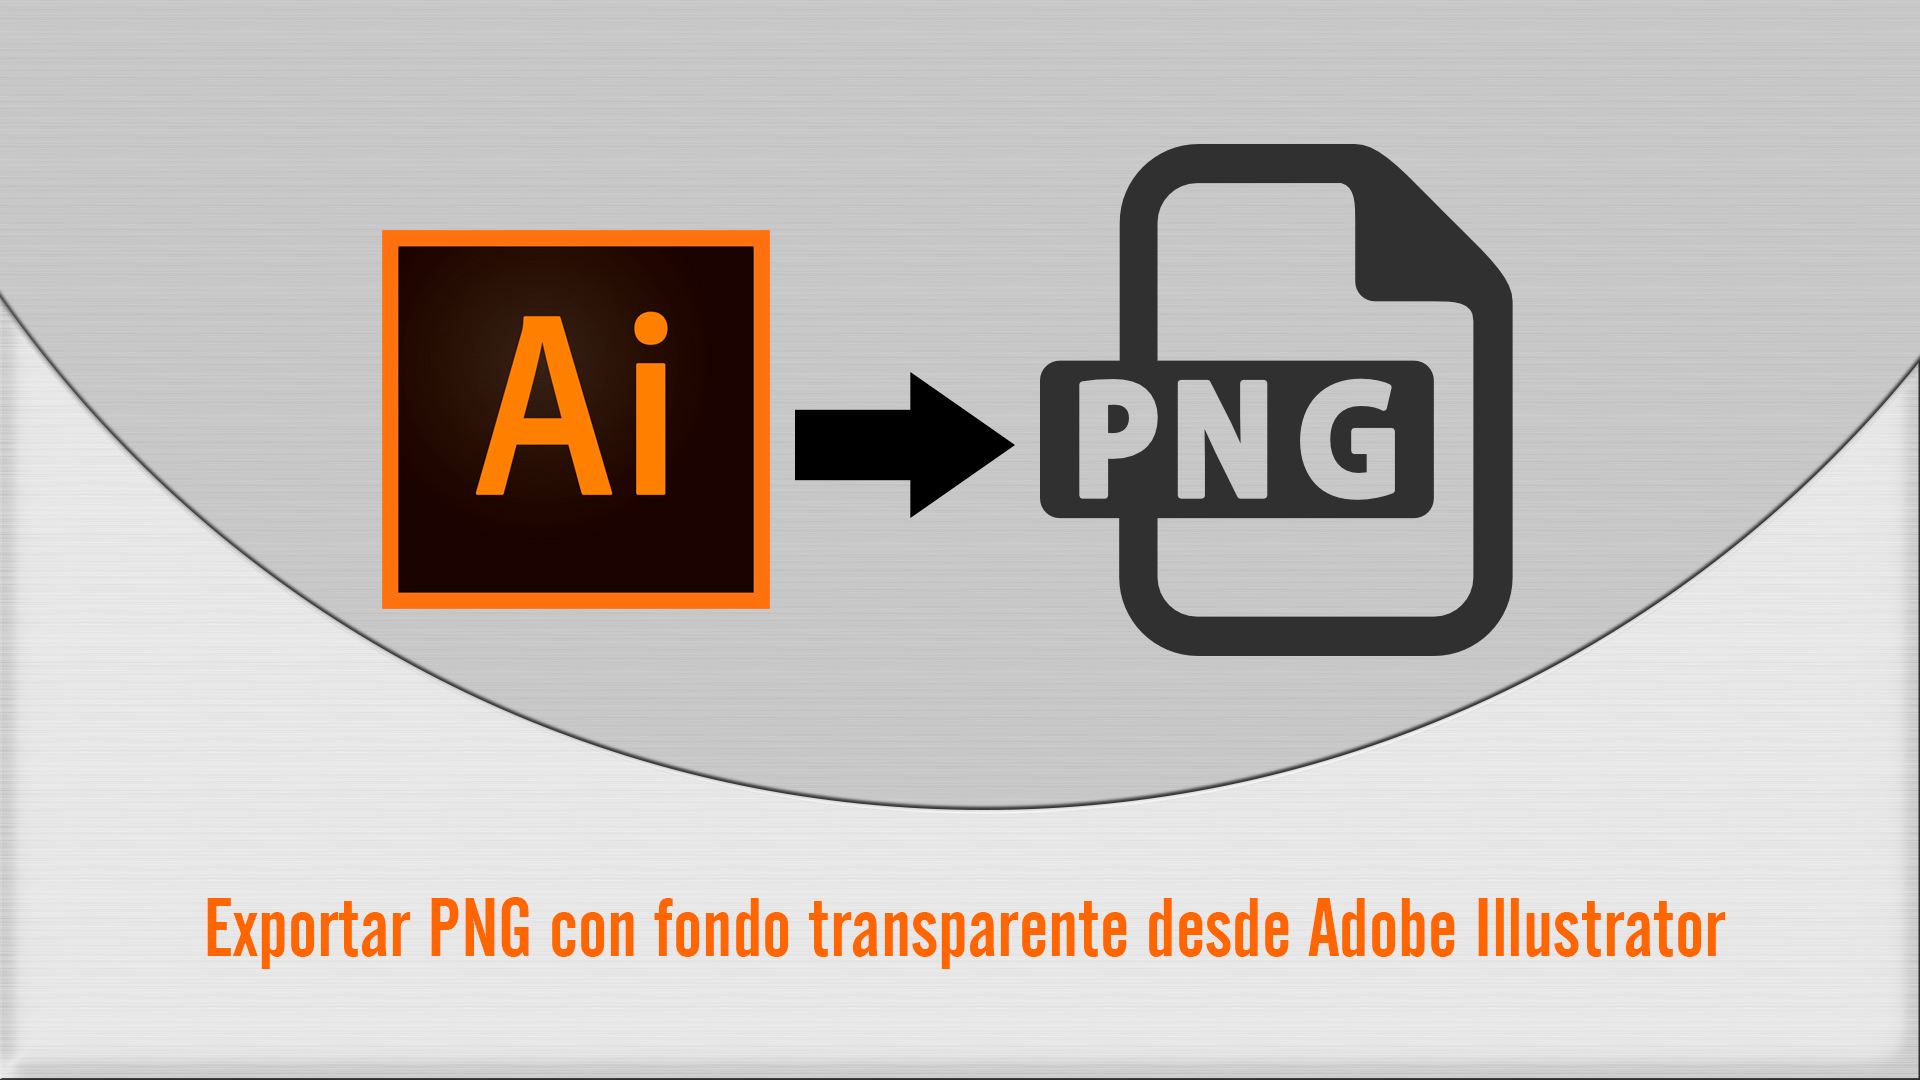 Como Exportar una imagen PNG desde Adobe Illustrator con el fondo transparente